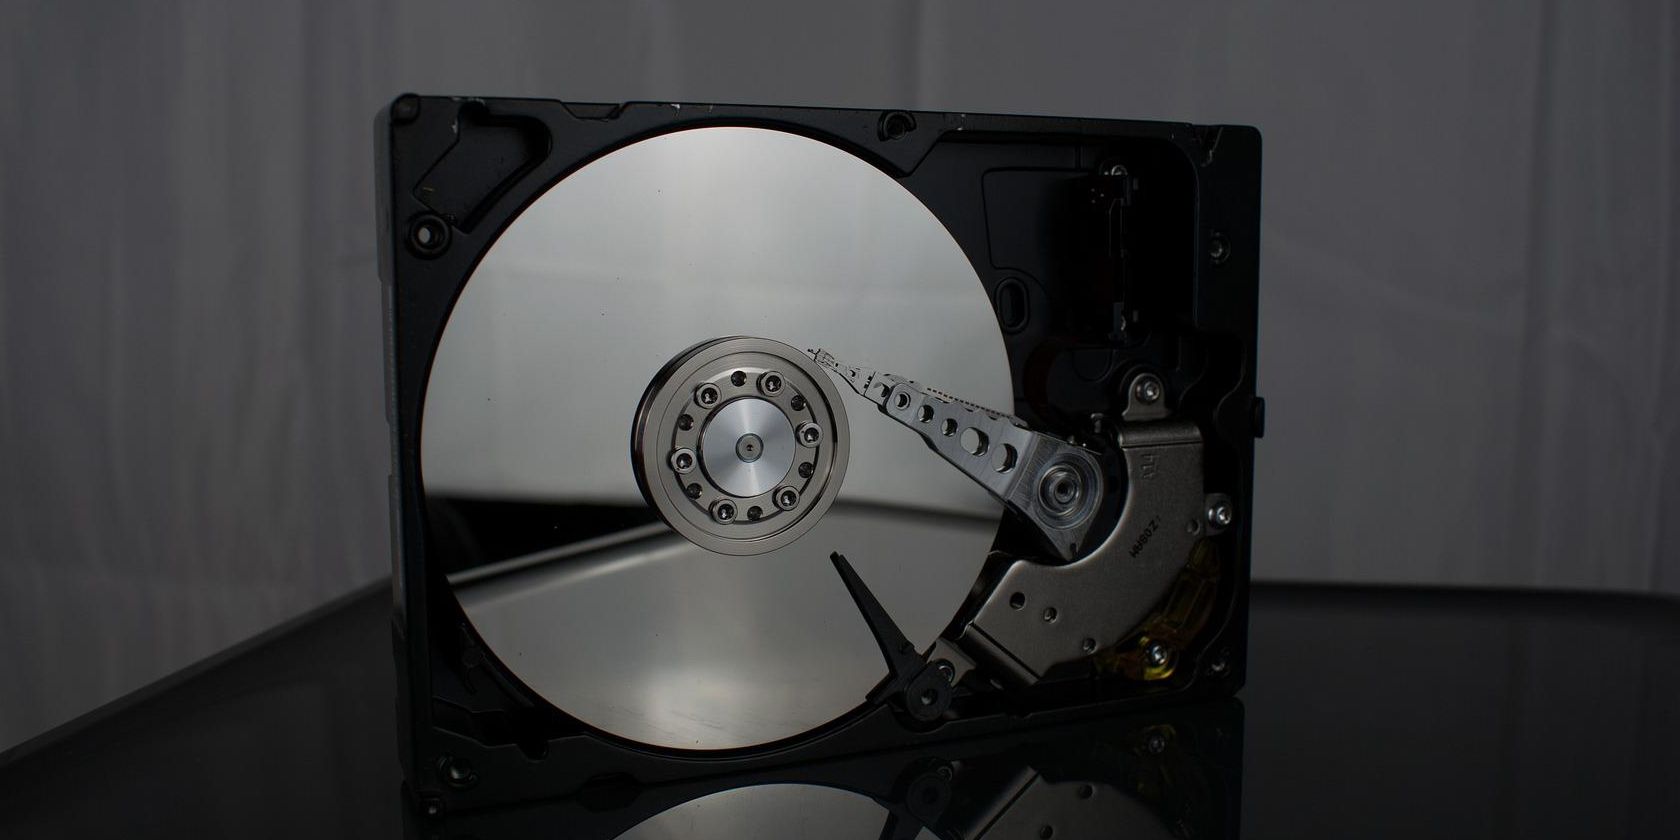 hard drive storage